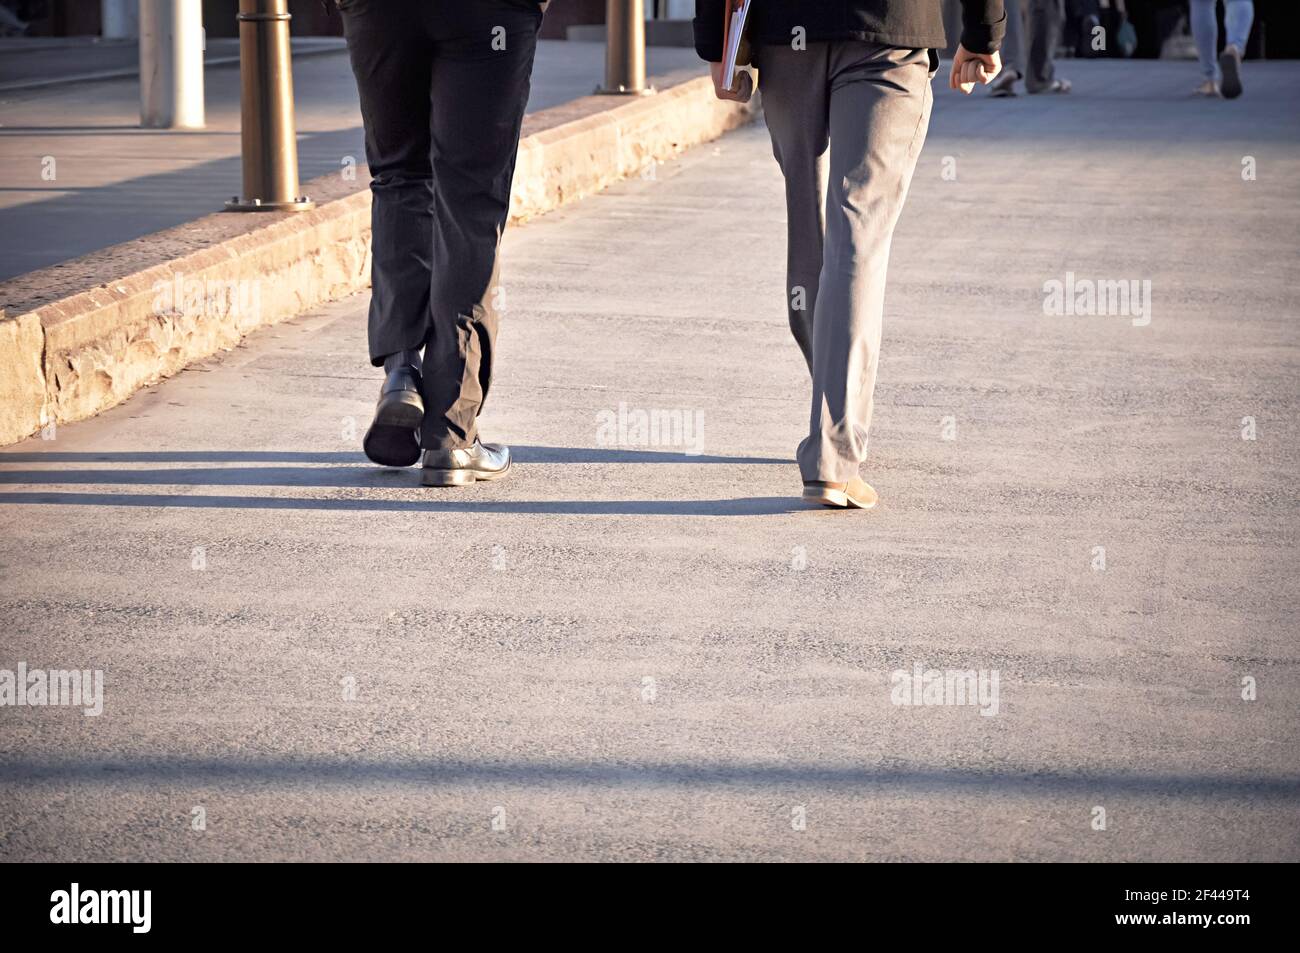 Piernas de dos hombres caminando sobre el pavimento Foto de stock